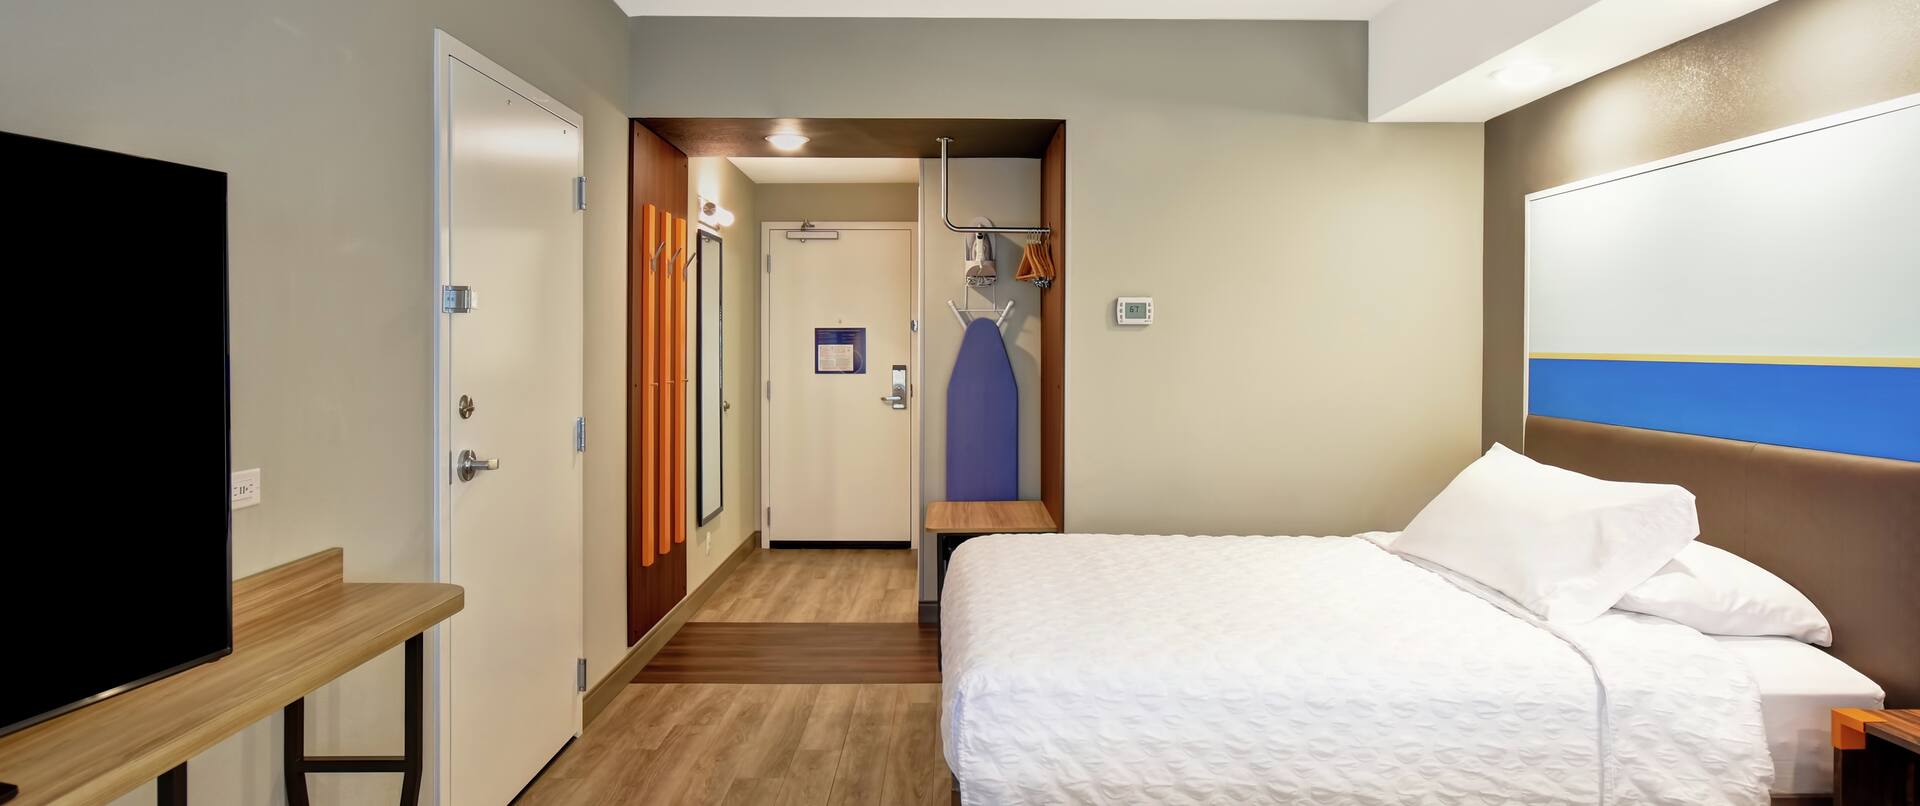 Double Queen Beds Room